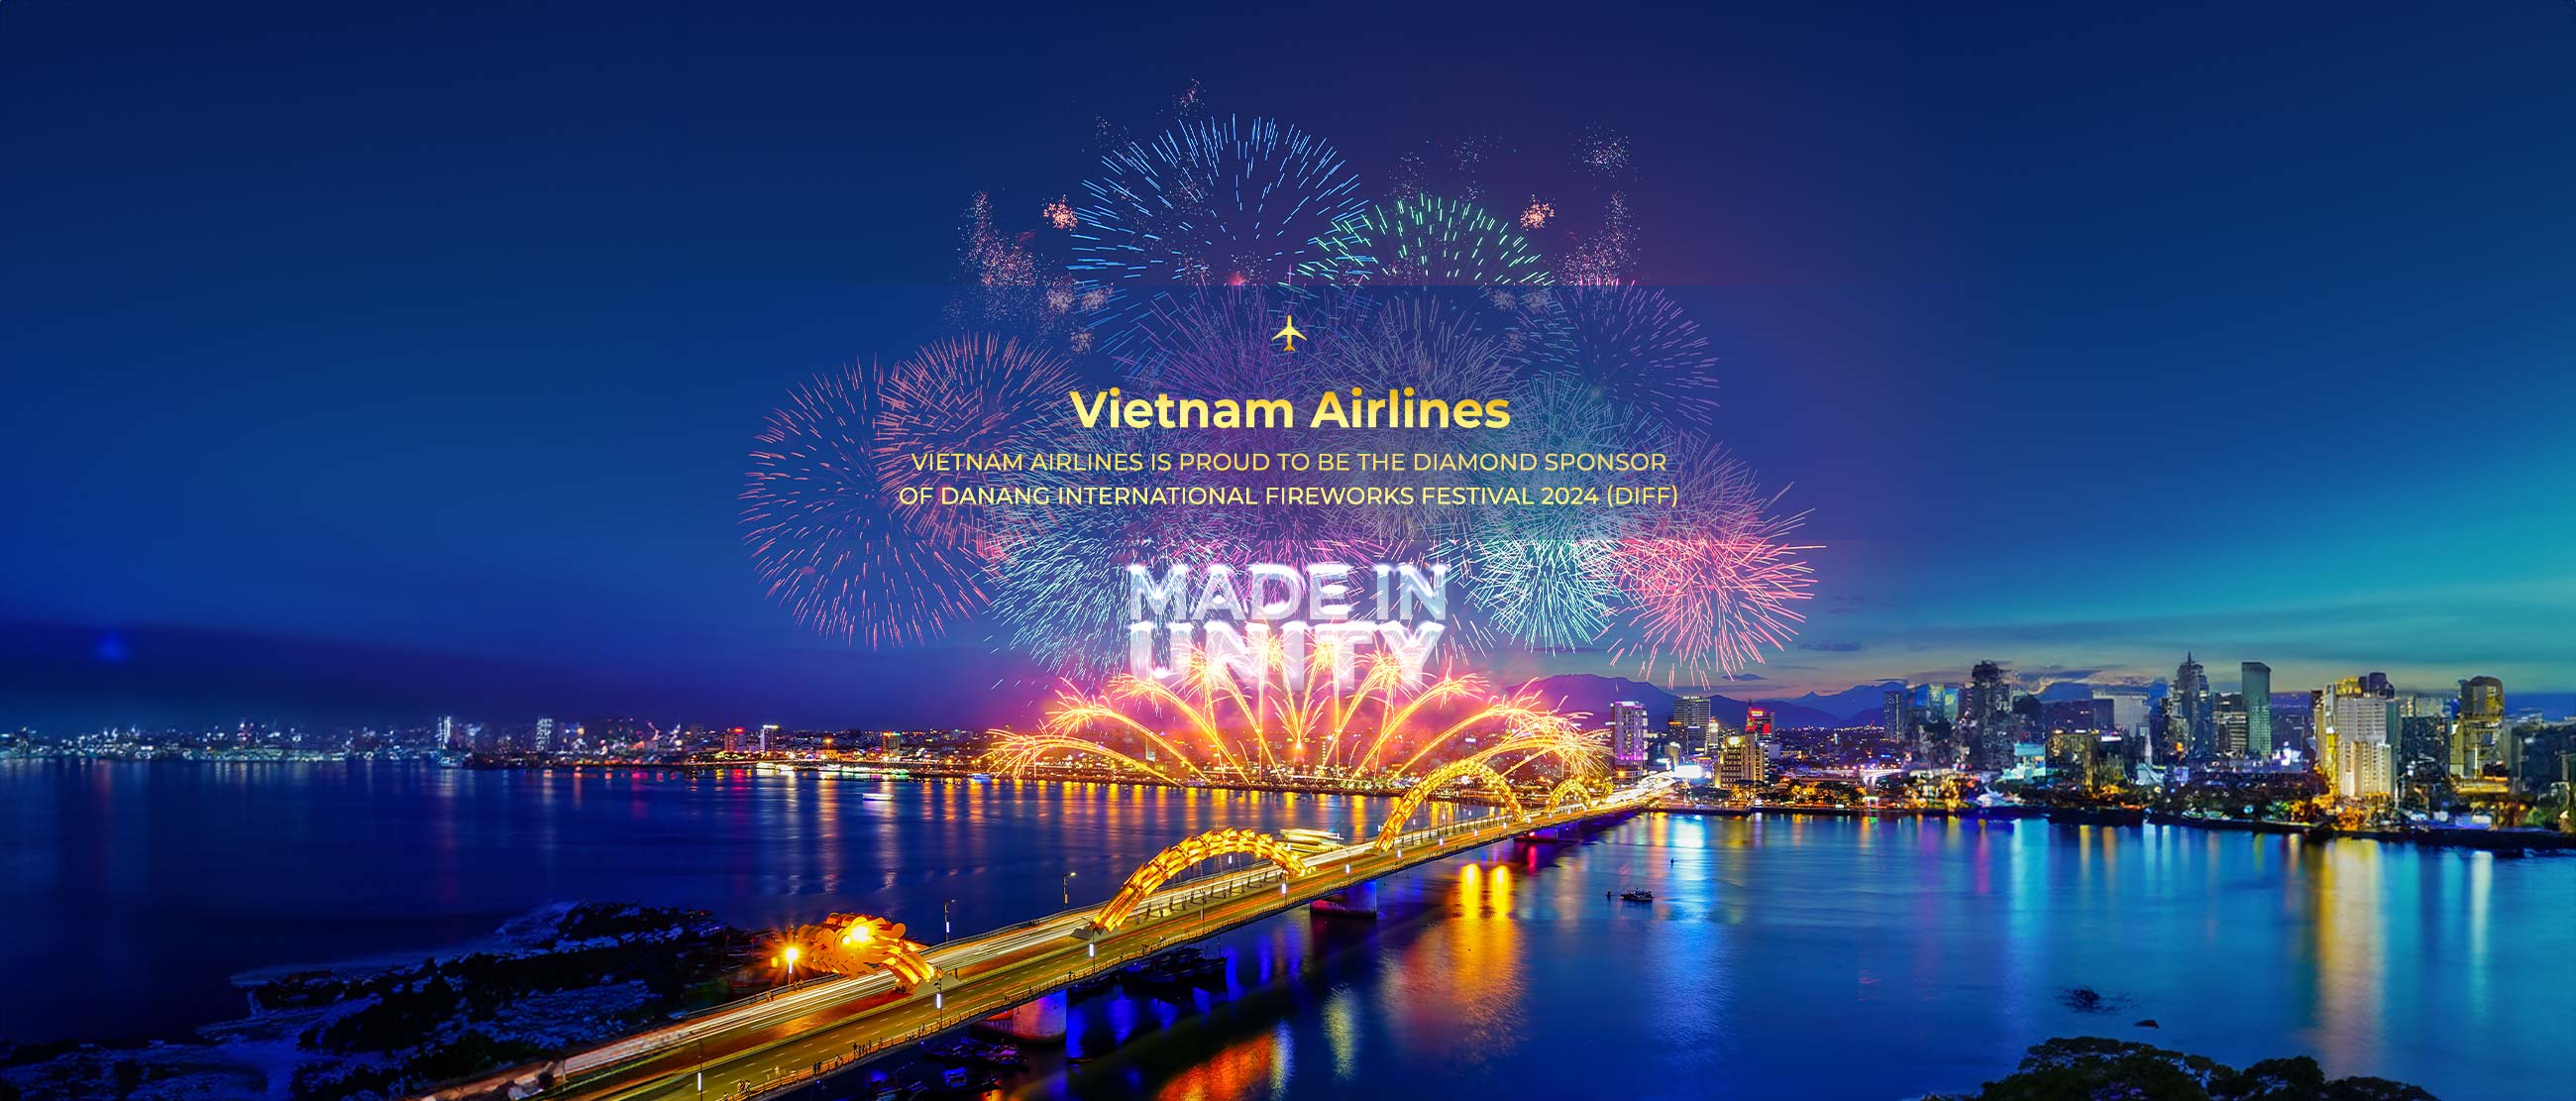 VNAXPRESS trên chặng bay giữa Hà Nội và TP. Hồ Chí Minh cùng Vietnam Airlines